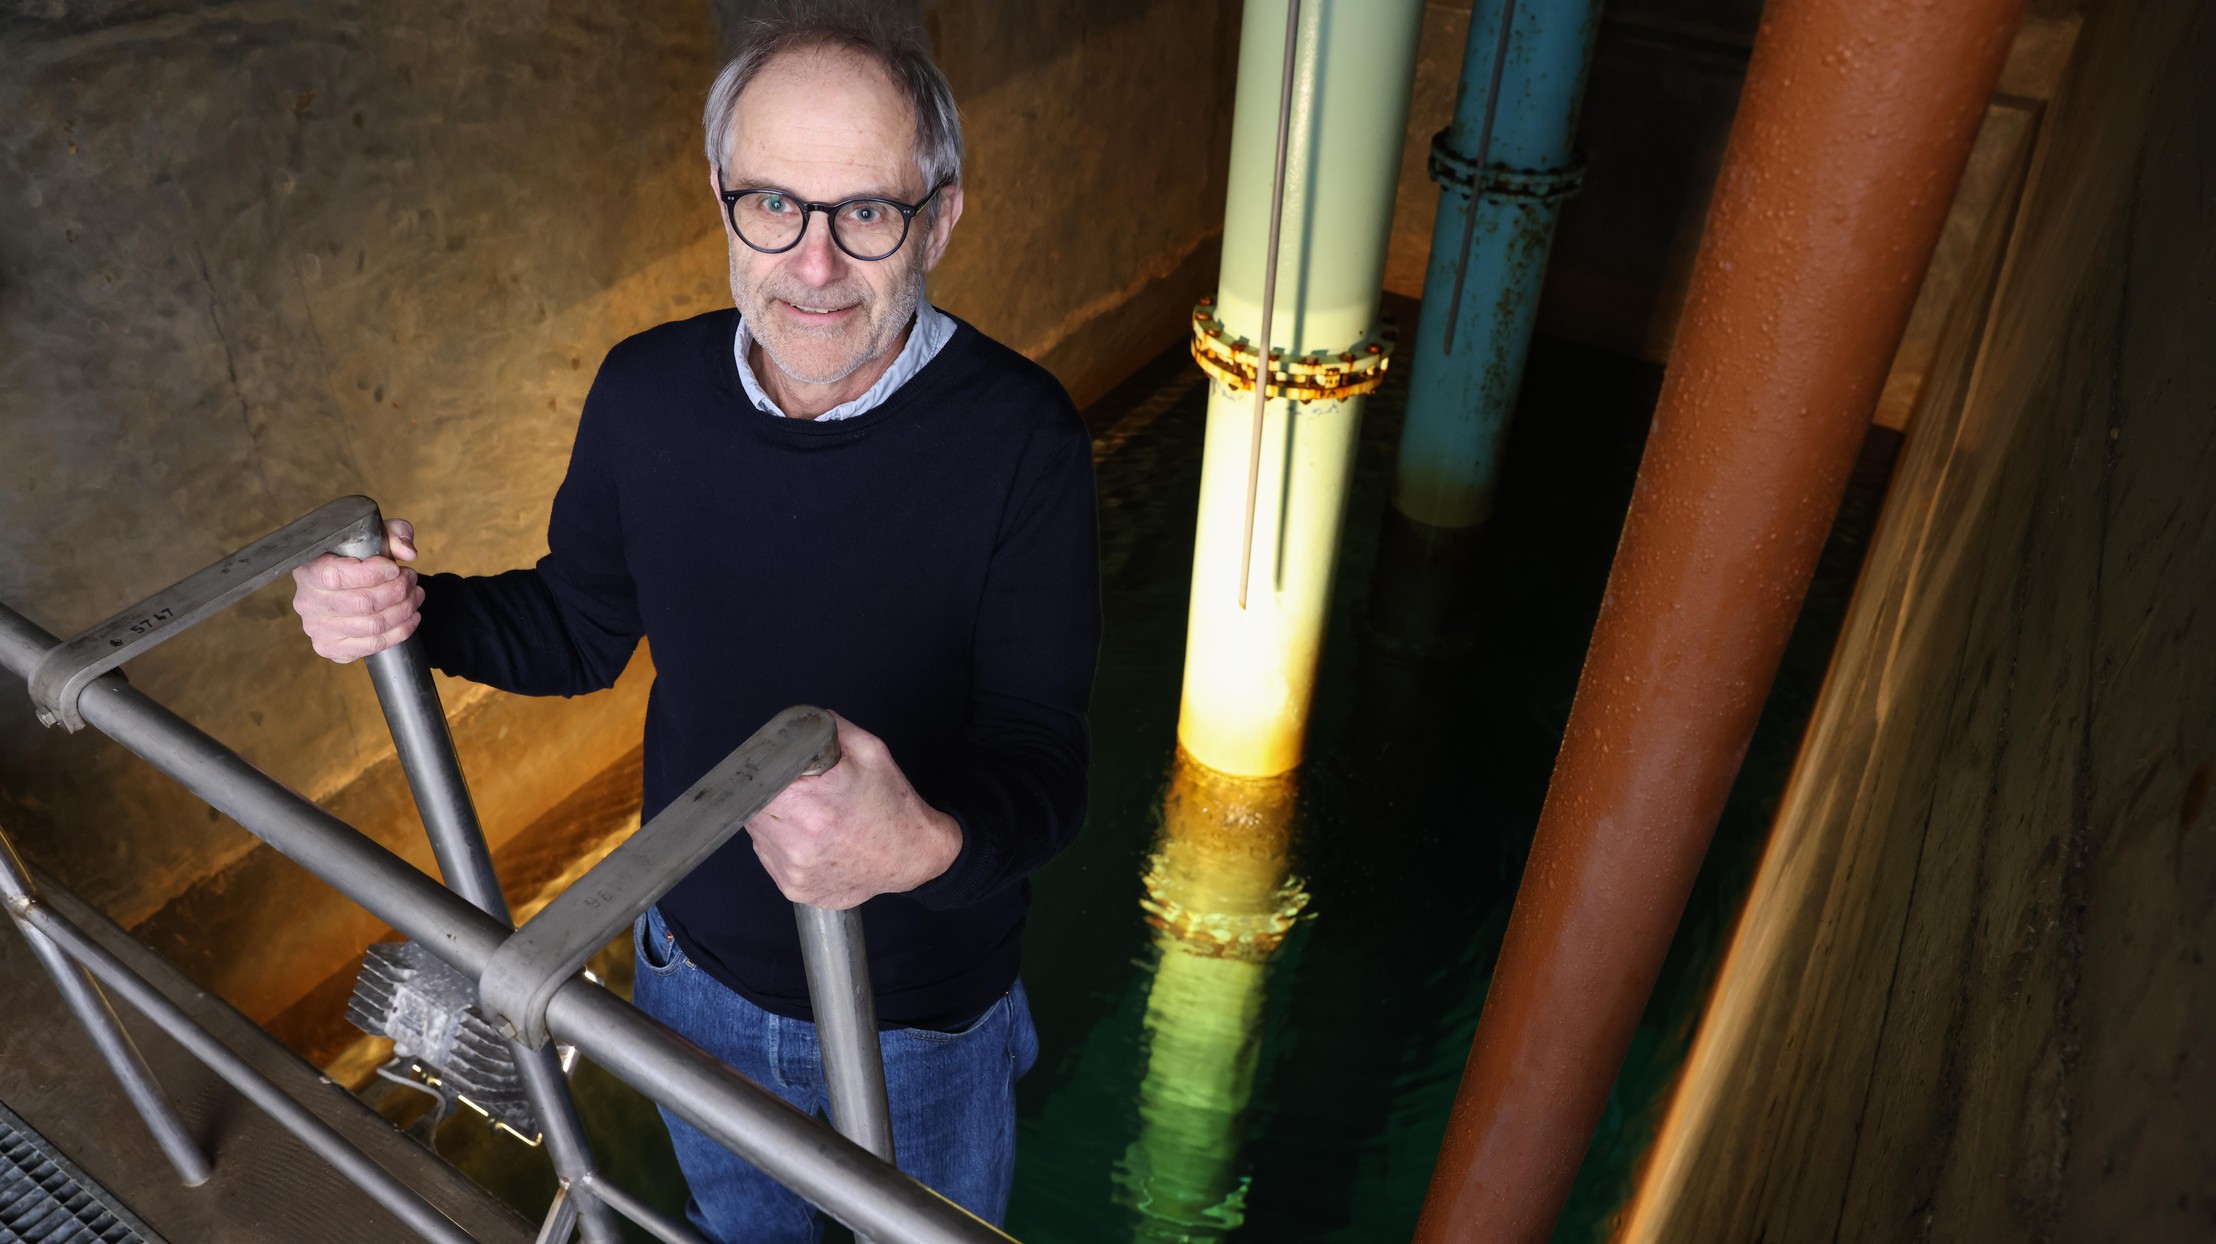 Urs von Gunten, the unsung hero of water treatment